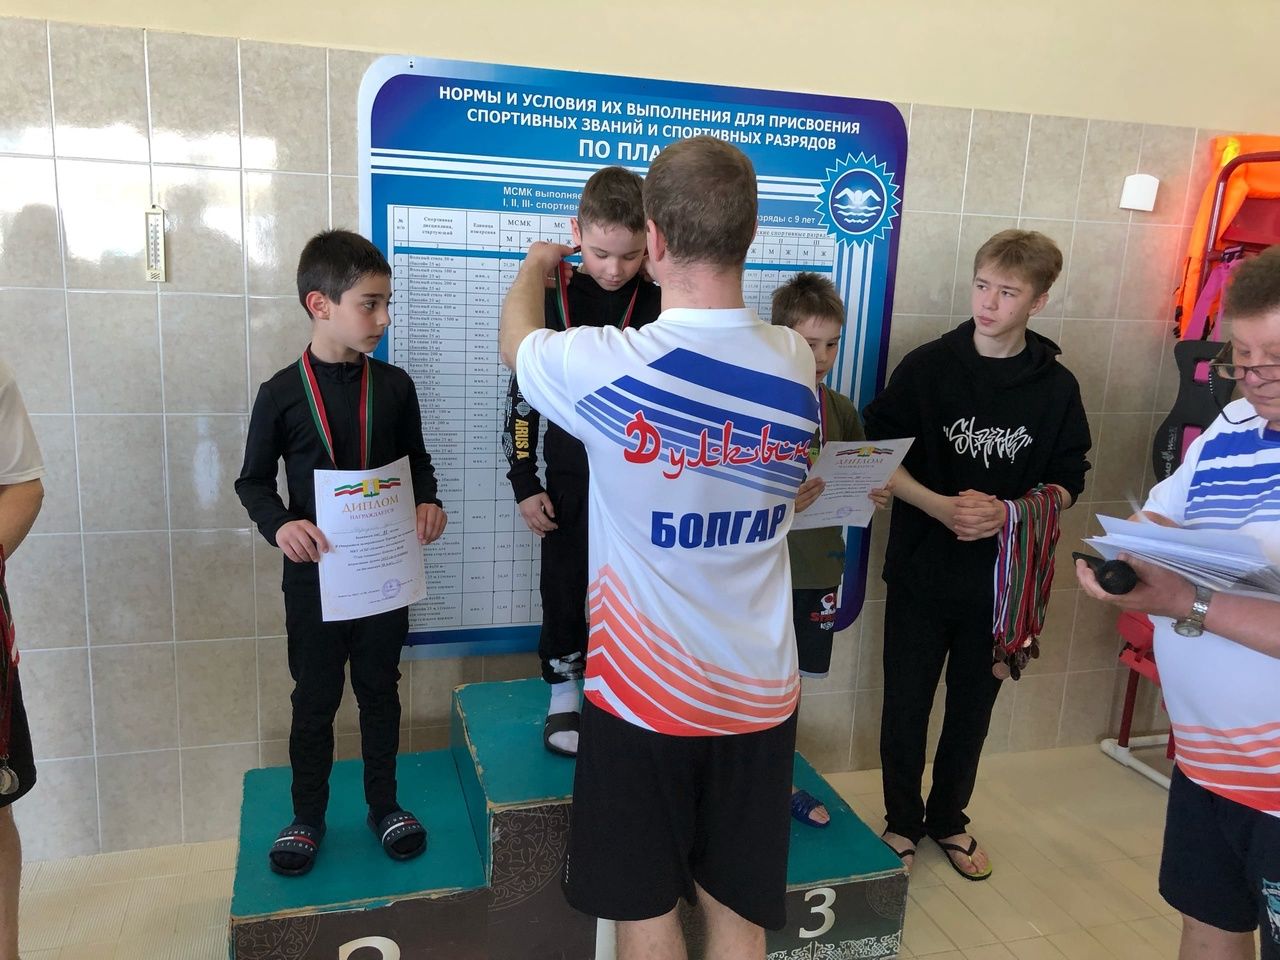 В Болгаре прошёл открытый межрайонный турнир по плаванию